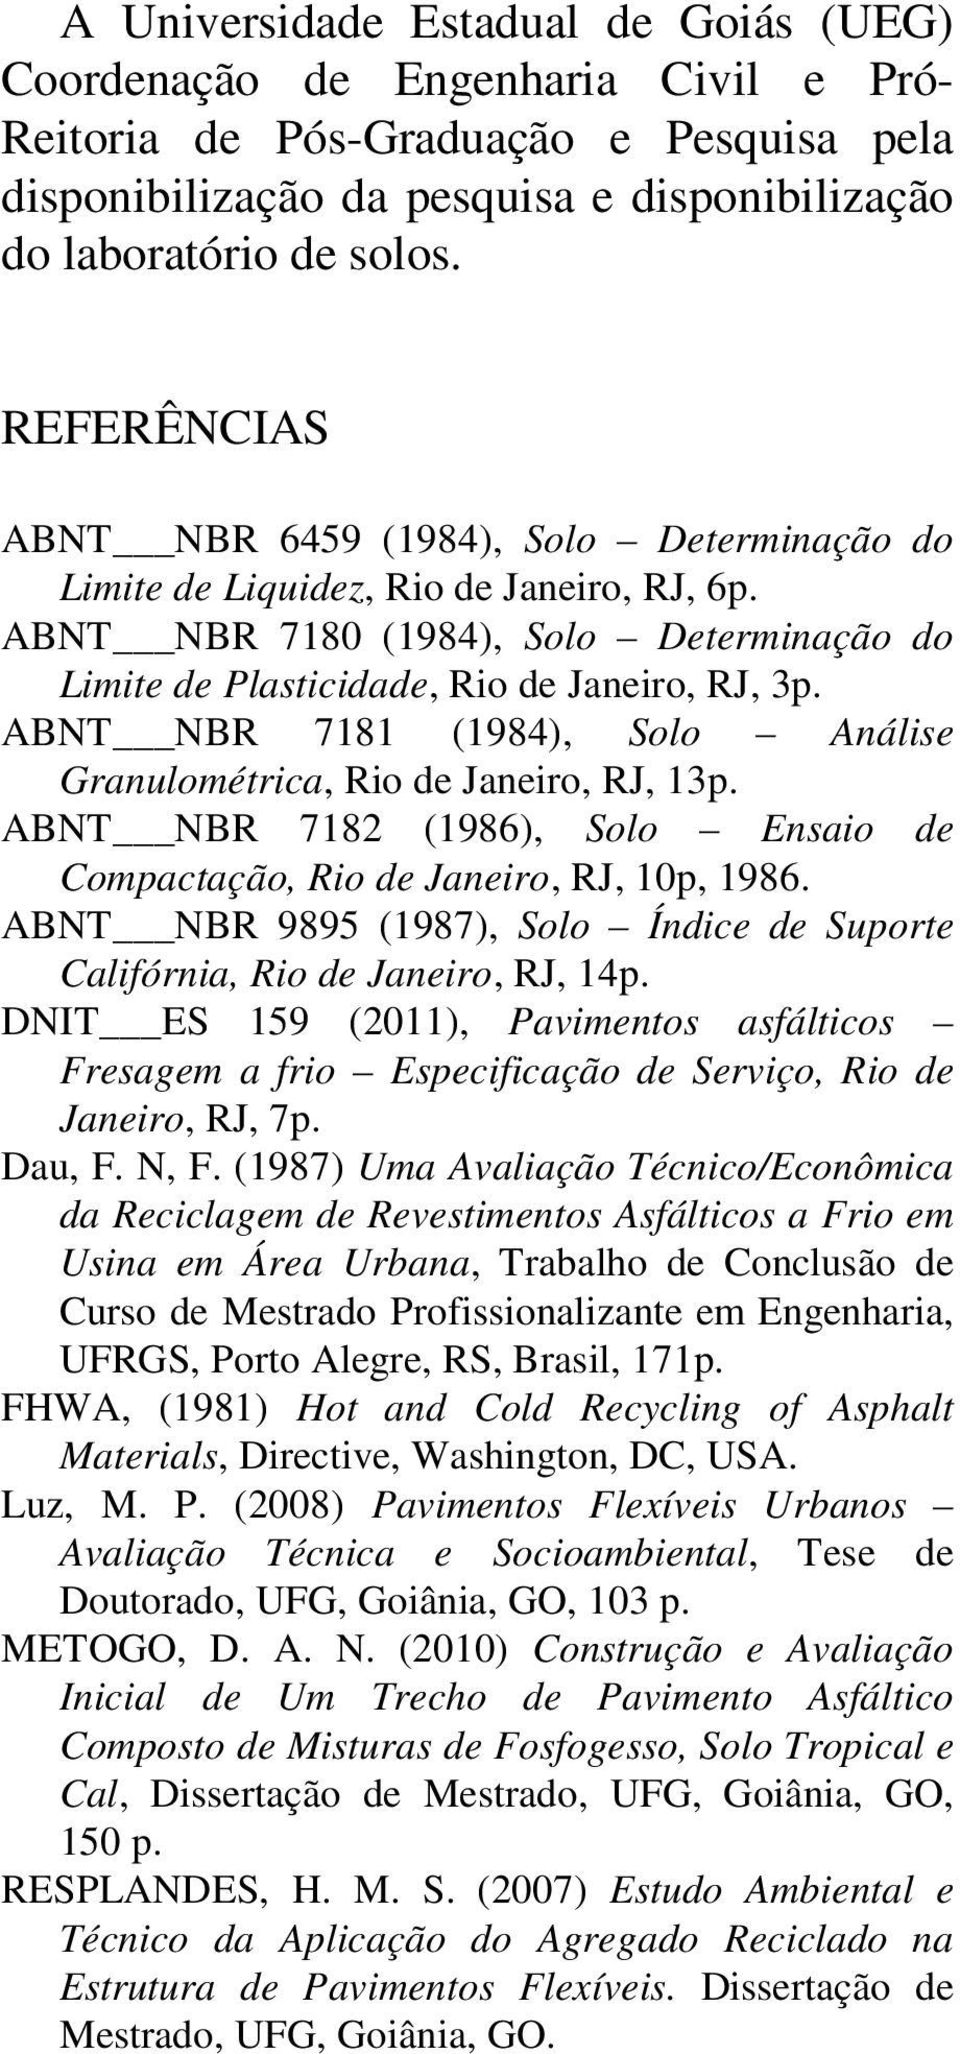 ABNT NBR 7181 (1984), Solo Análise Granulométrica, Rio de Janeiro, RJ, 13p. ABNT NBR 7182 (1986), Solo Ensaio de Compactação, Rio de Janeiro, RJ, 10p, 1986.